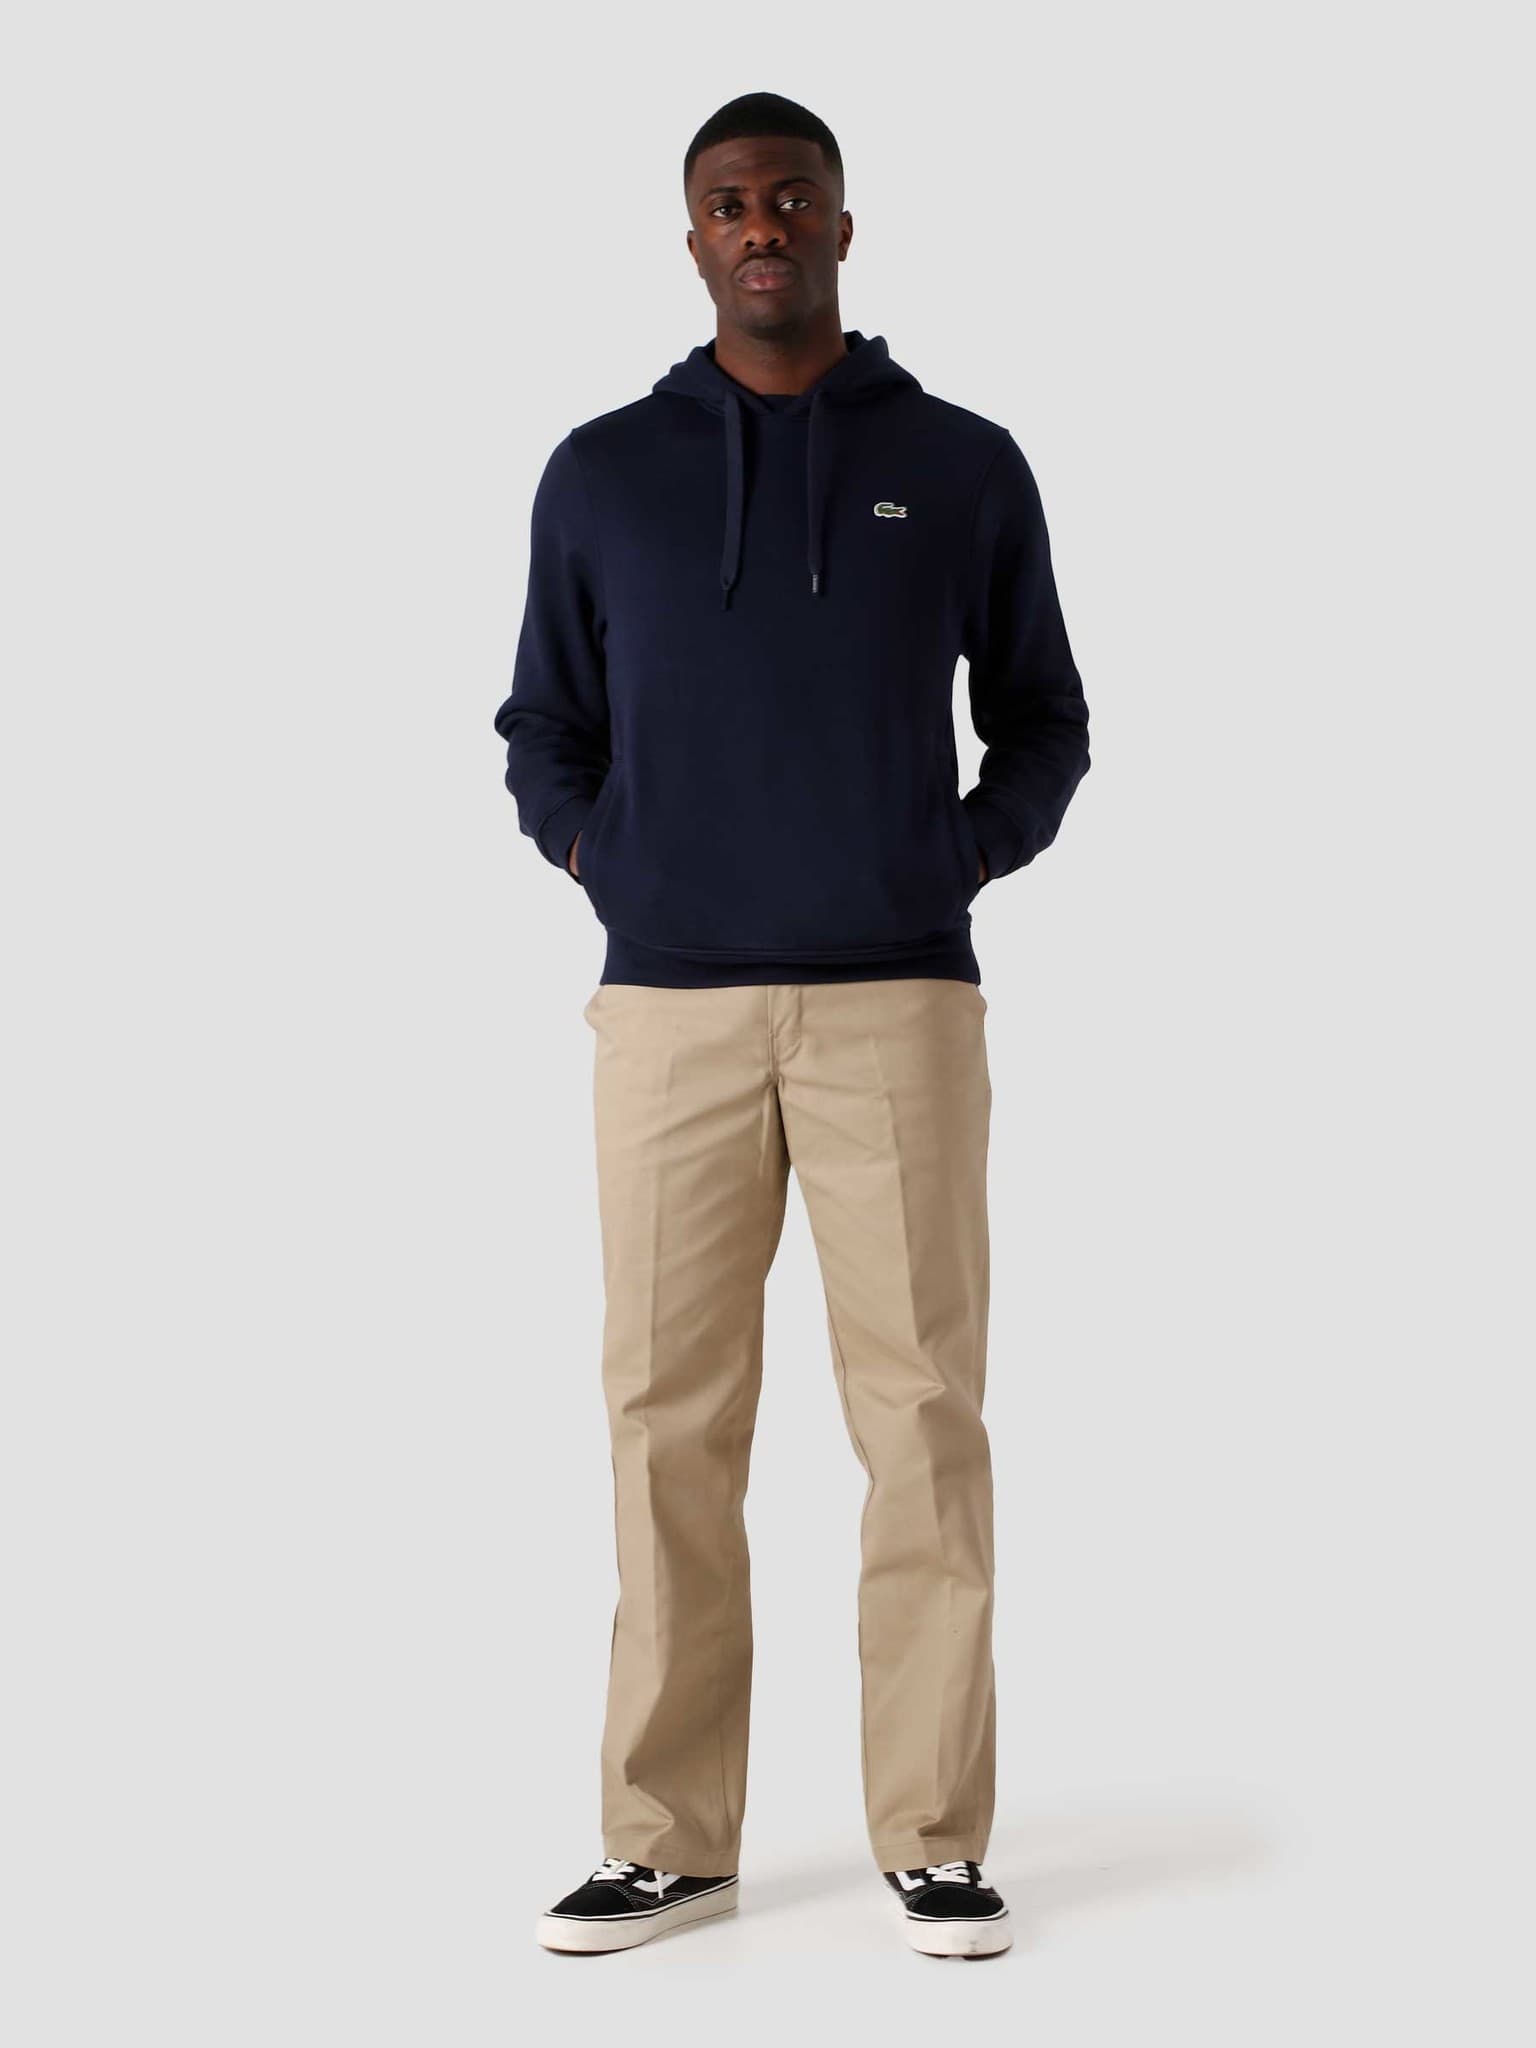 1HS1 Men's Sweater Navy Blue SH1527-11